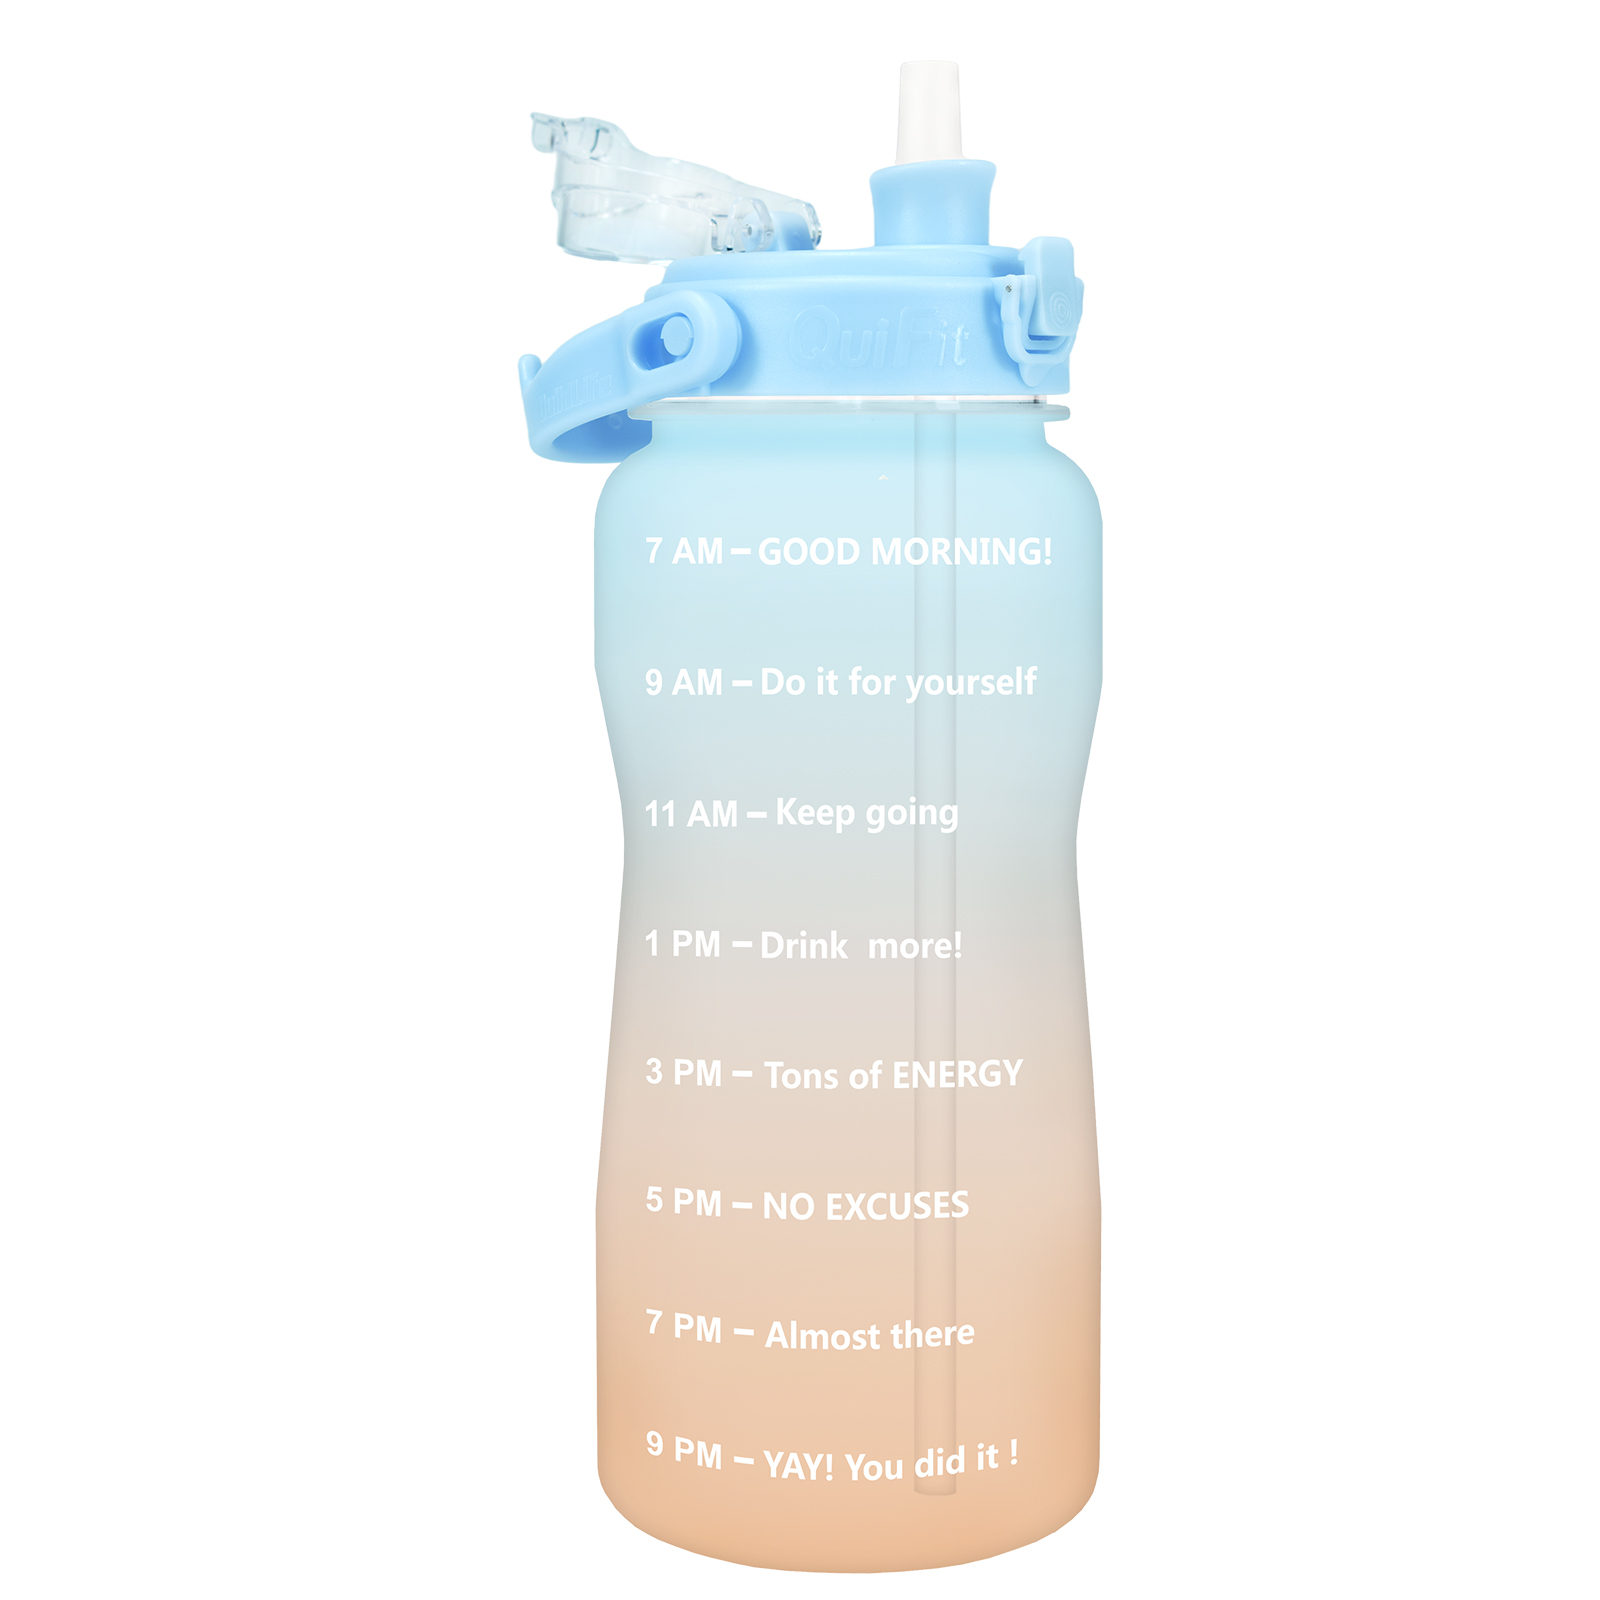 QuiFit Tritan Gallon Best Reusable Water Bottle With Flip Flop BPA